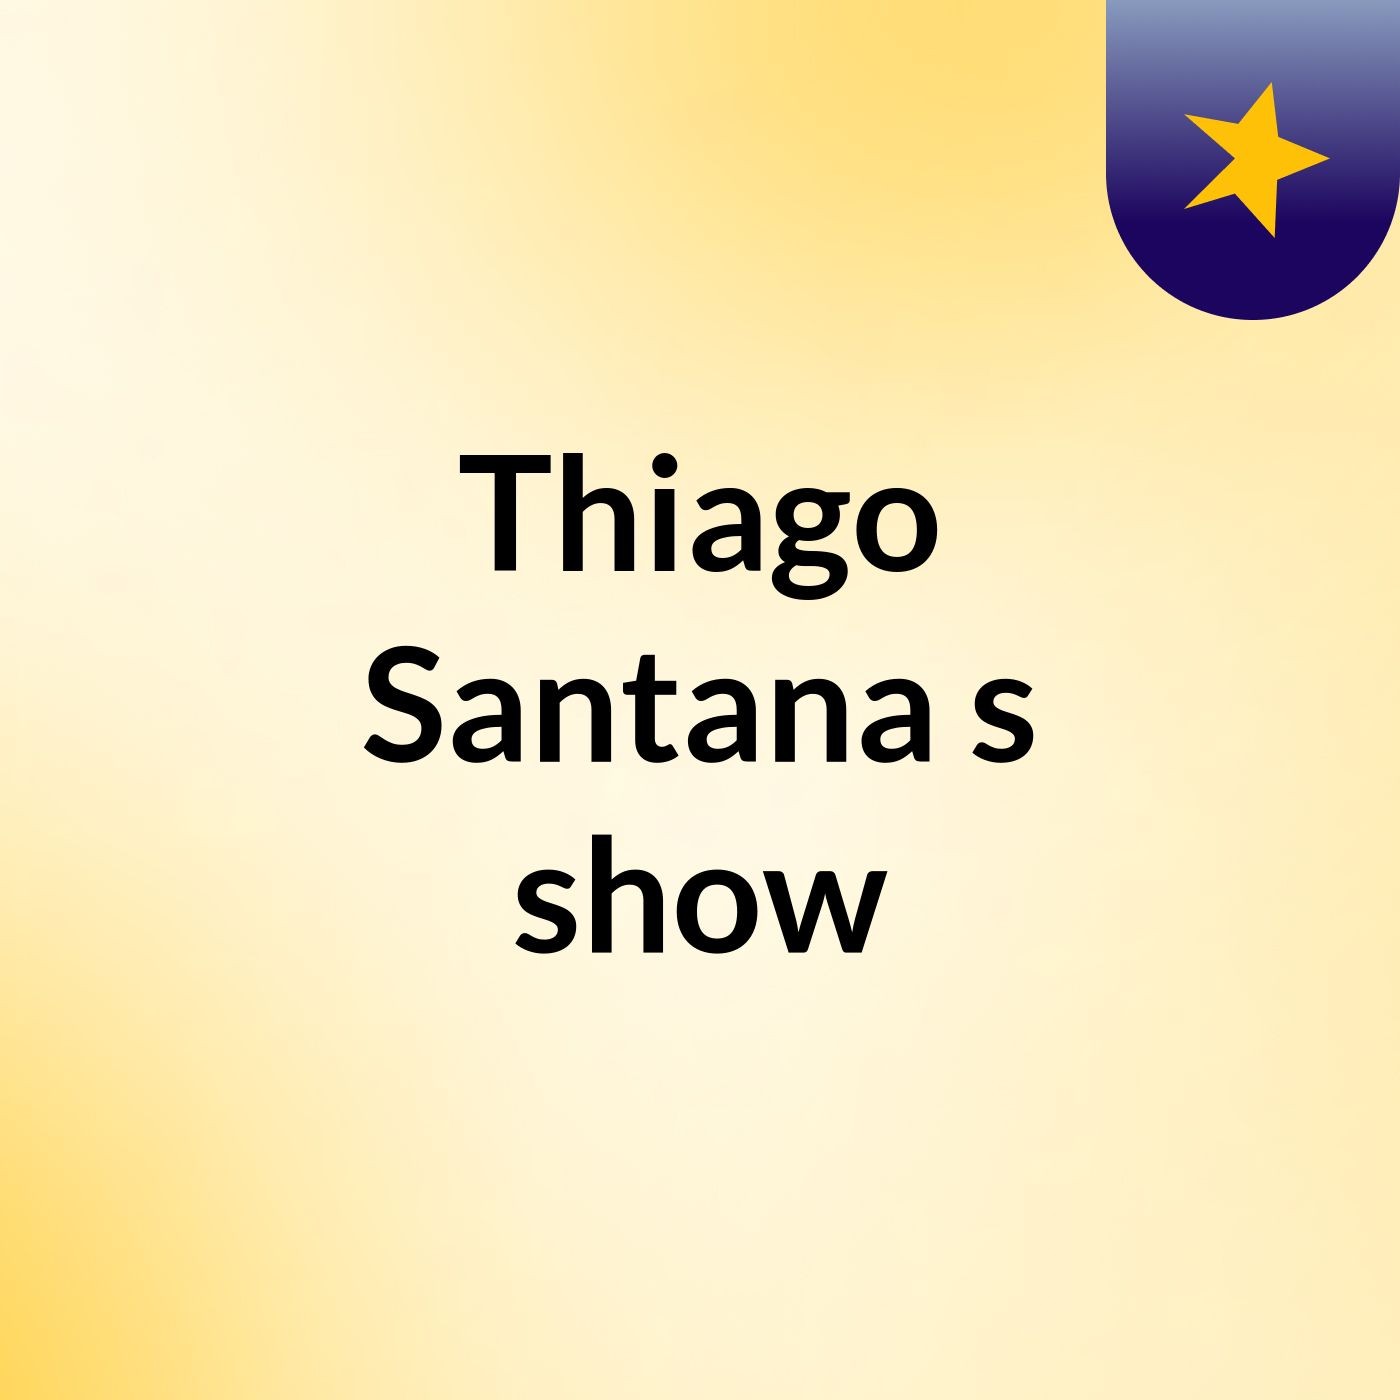 Thiago Santana's show